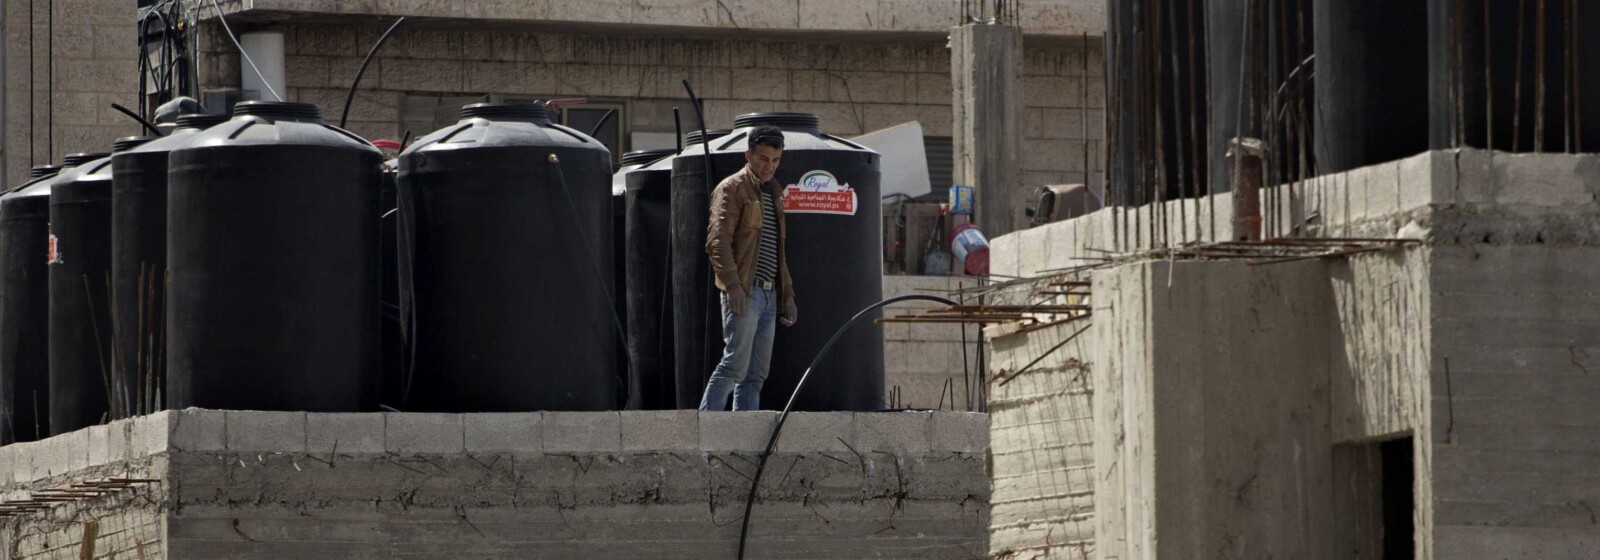 פועל ממזרח ירושלים לצד מיכלי מים על גג בשועפאט. "יש כאן משהו שבסוף יתפוצץ" (צילום: AP Photo/Sebastian Scheiner)